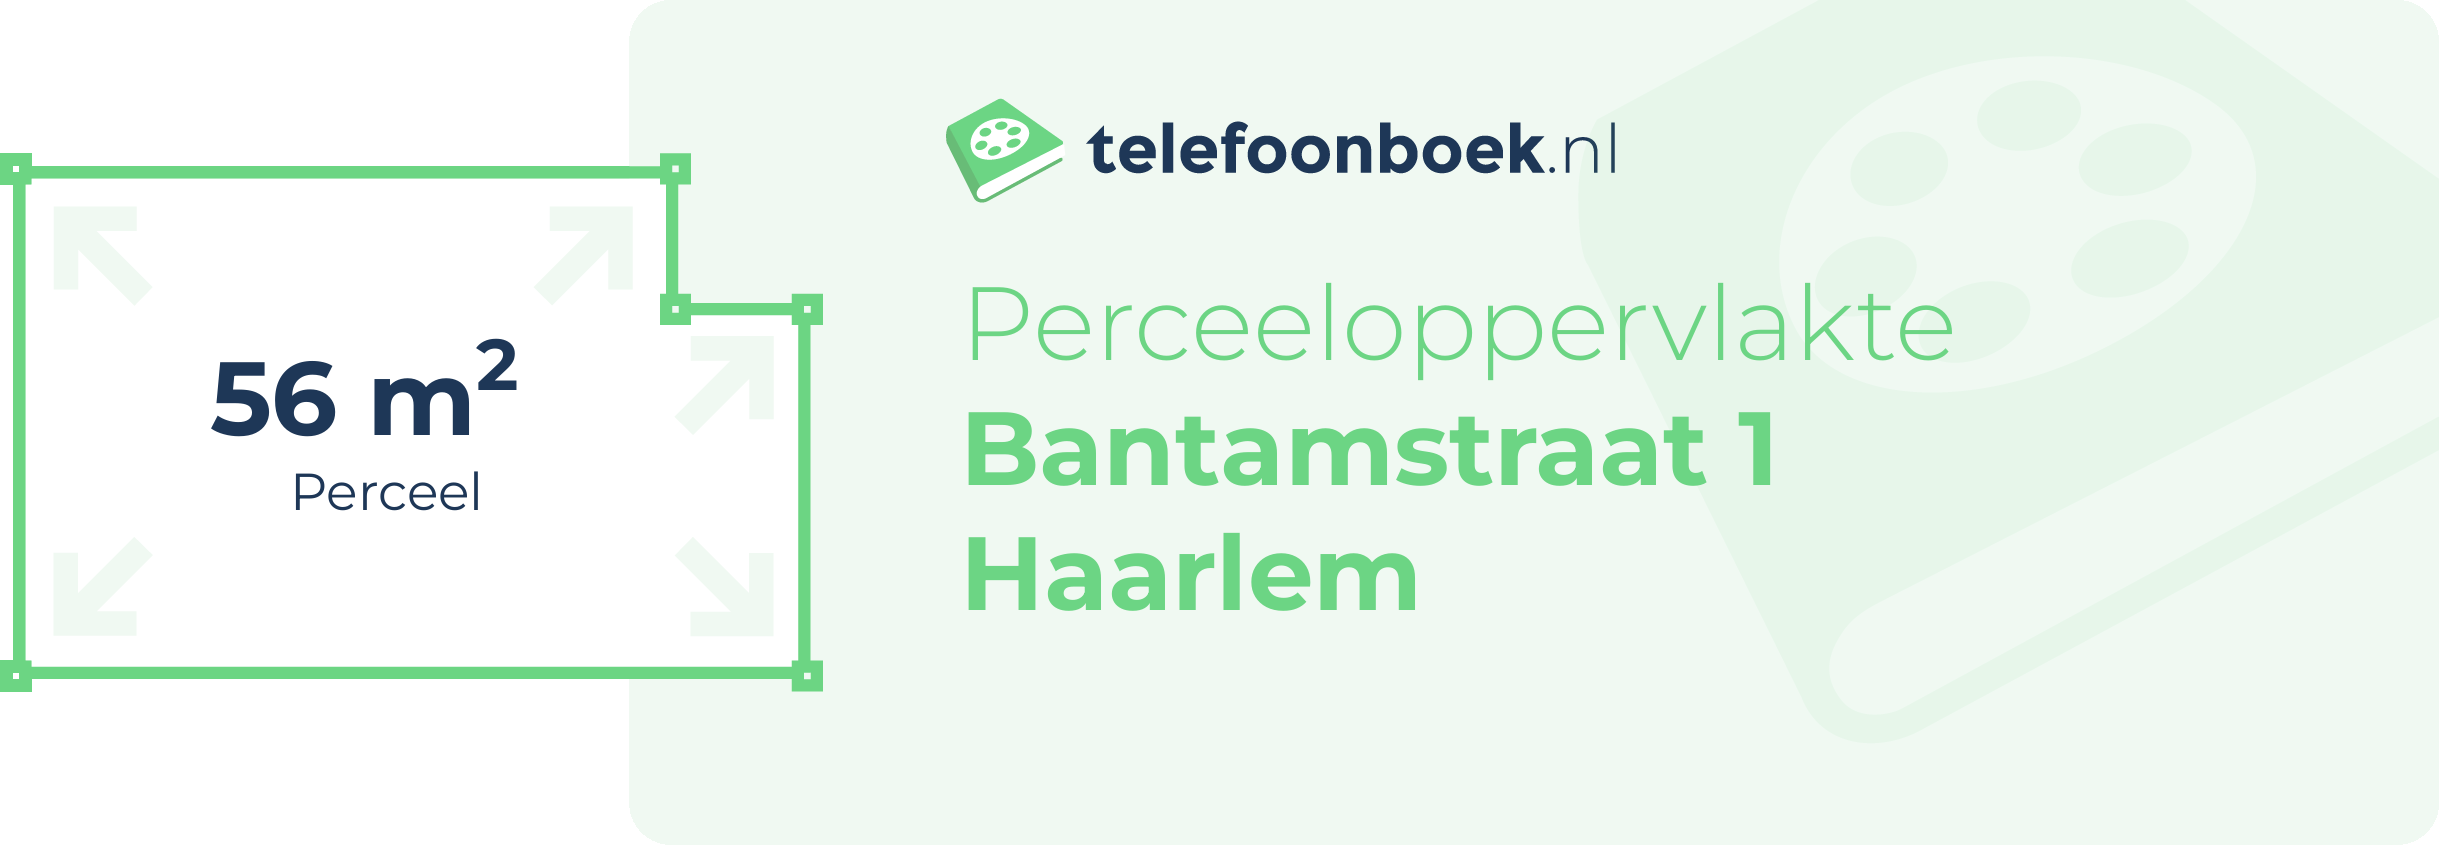 Perceeloppervlakte Bantamstraat 1 Haarlem